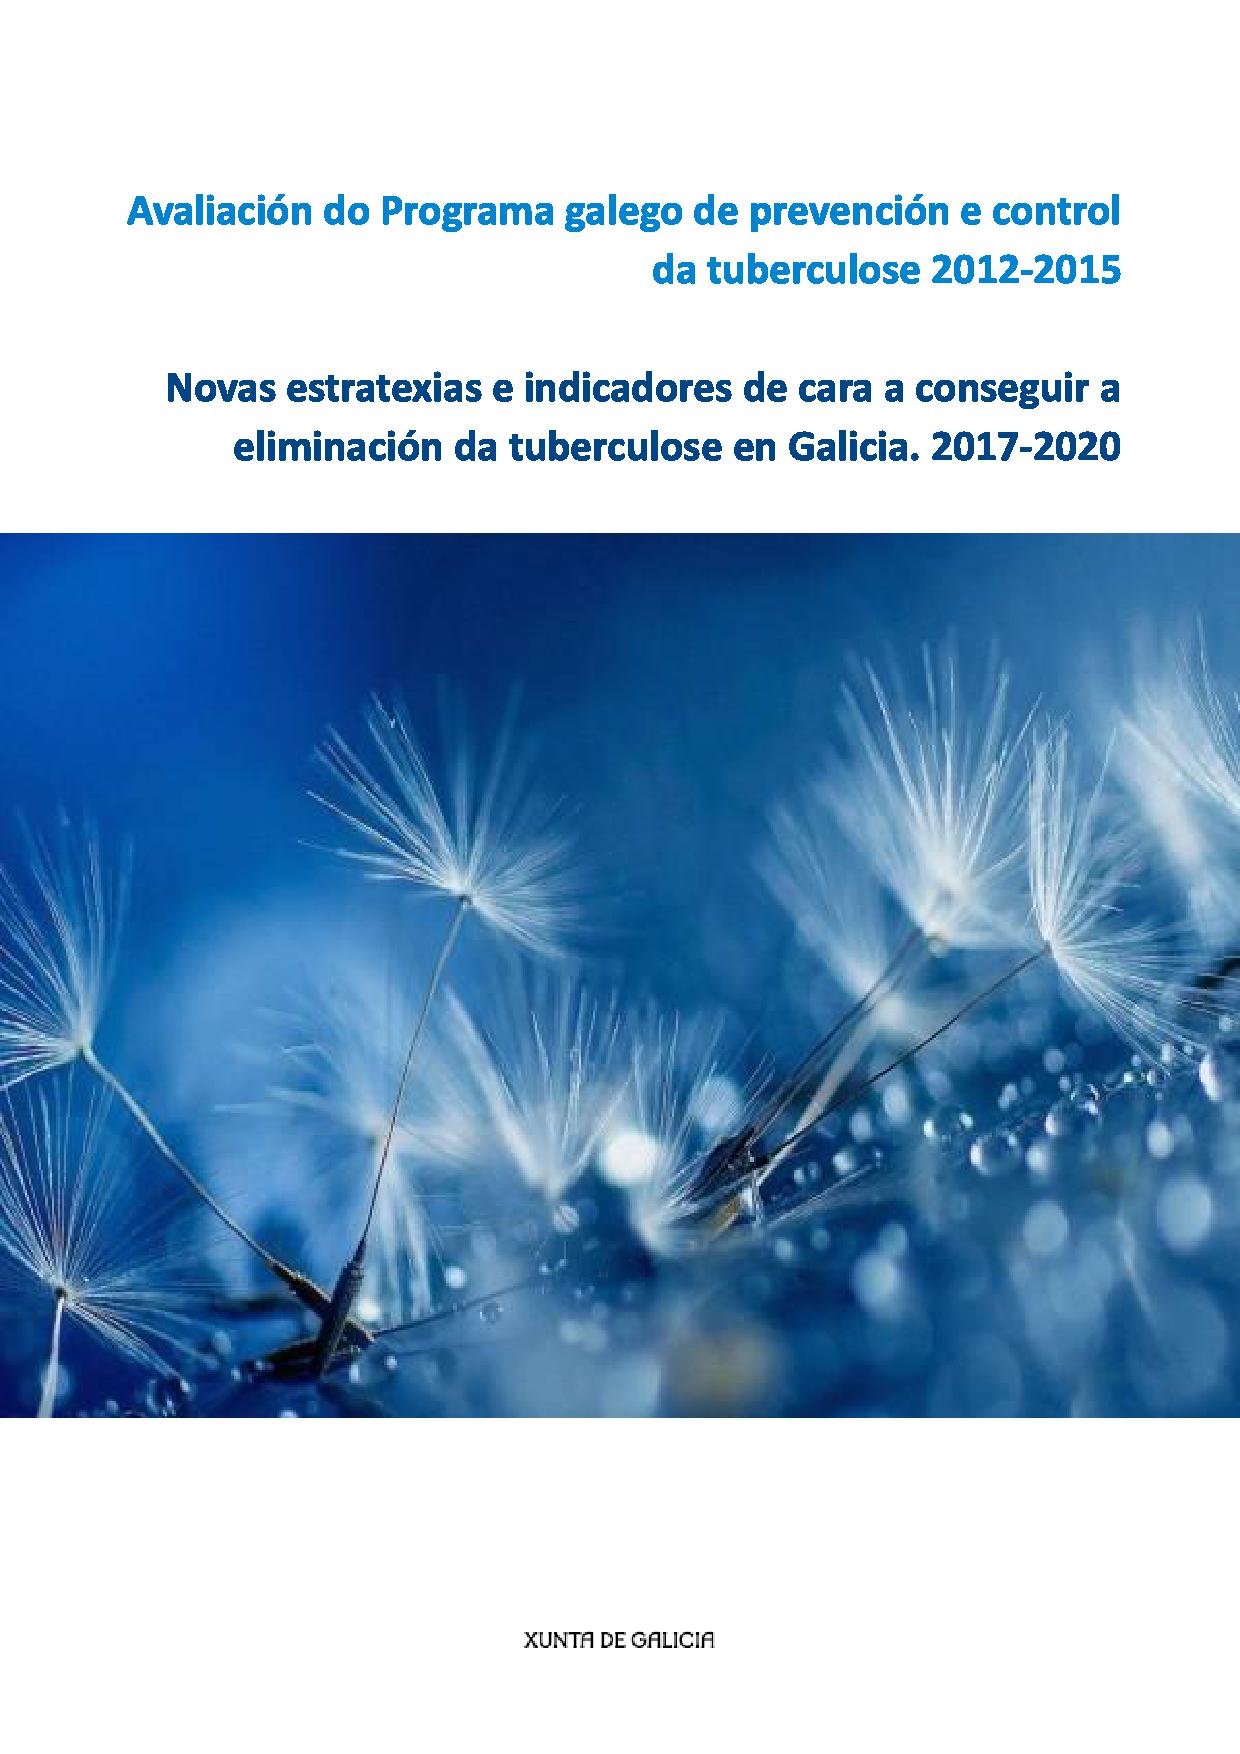 Imagen de portada del libro Avaliación do Programa galego de prevención e control da tuberculose 2012-2015. Novas estratexias e indicadores de cara a conseguir a eliminación da tuberculose en Galicia. 2017-2020